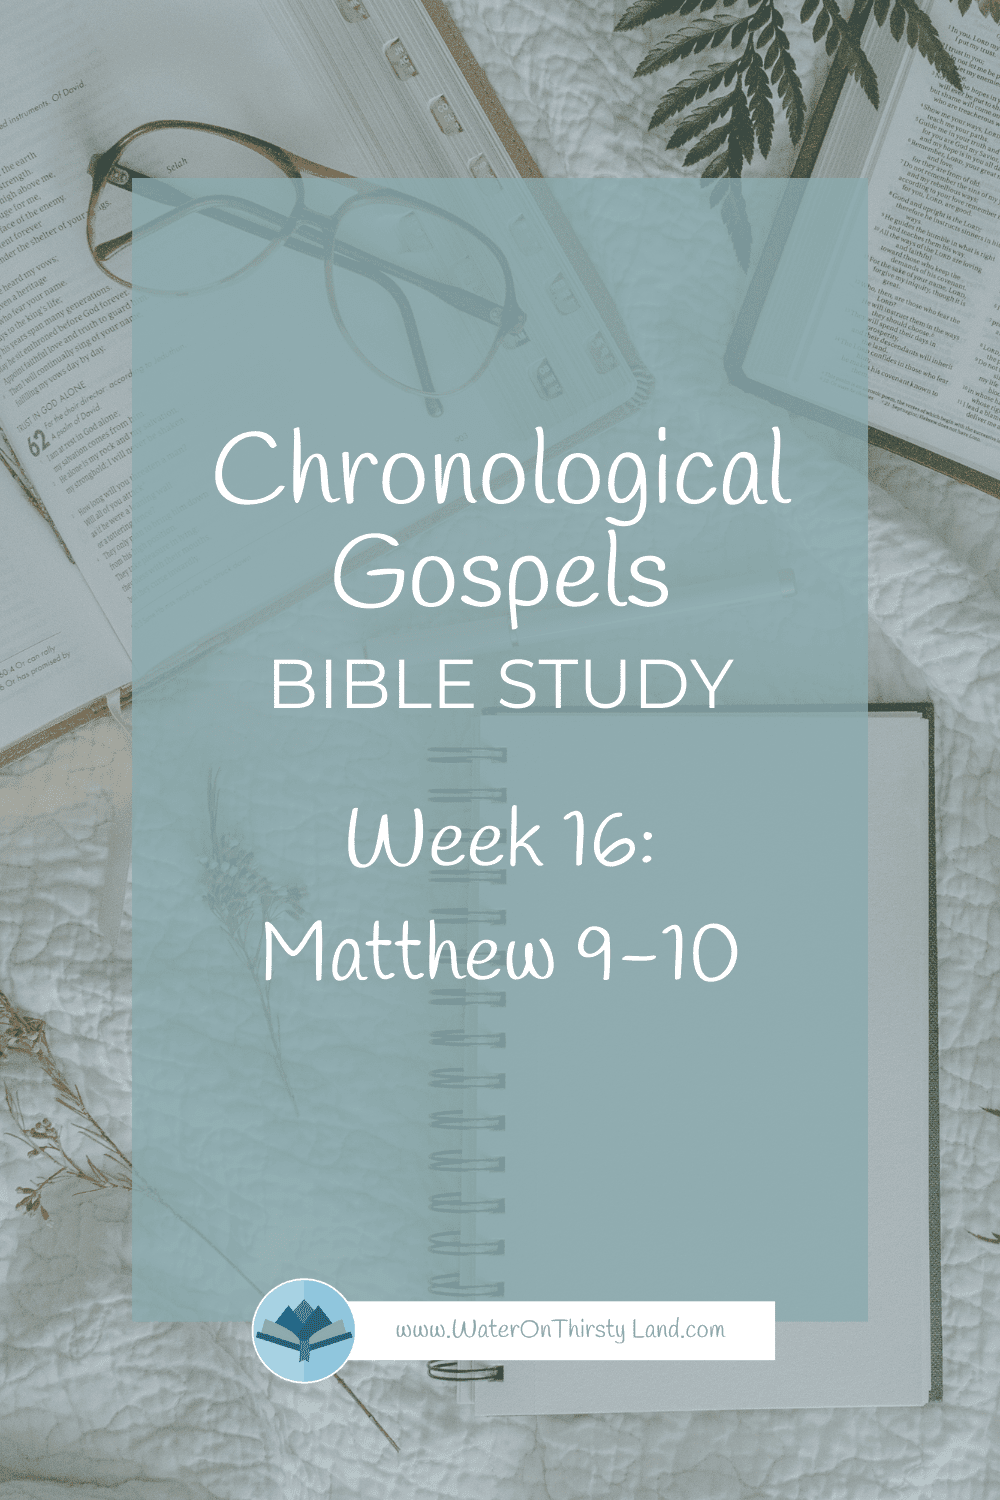 Chronological Gospels Week 16 Matthew 9-10